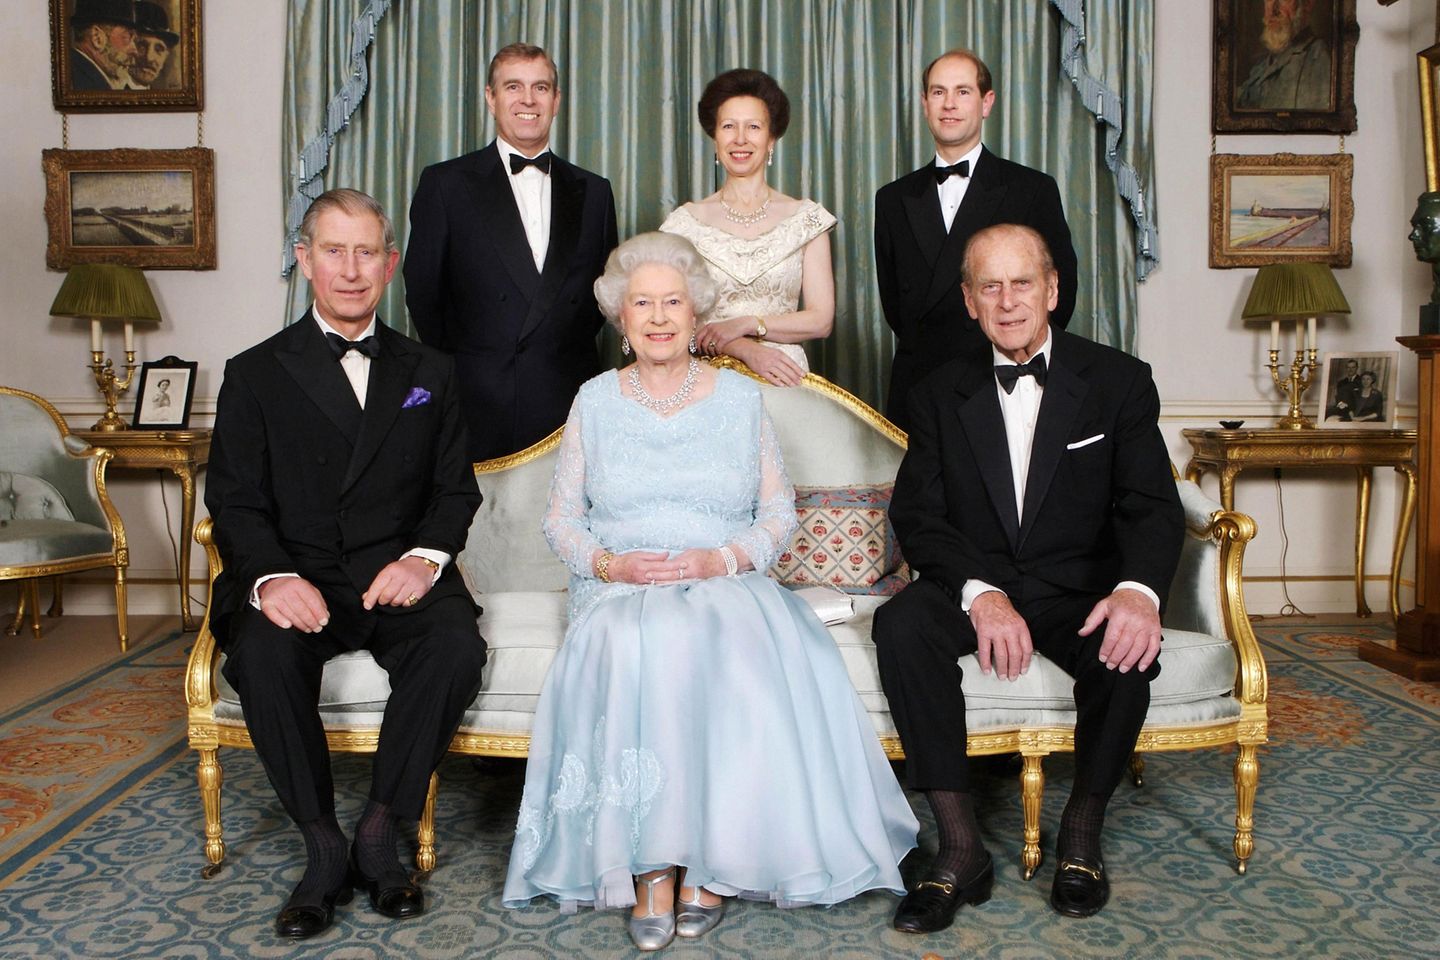 Dieses seltene Familienfoto aus jüngerer Zeit zeigt die Queen umgeben von ihren Kindern und ihrem Ehemann. Aufgenommen wurde es am 60. Hochzeitstag von Elizabeth und Philip am 18. No​vember 2007